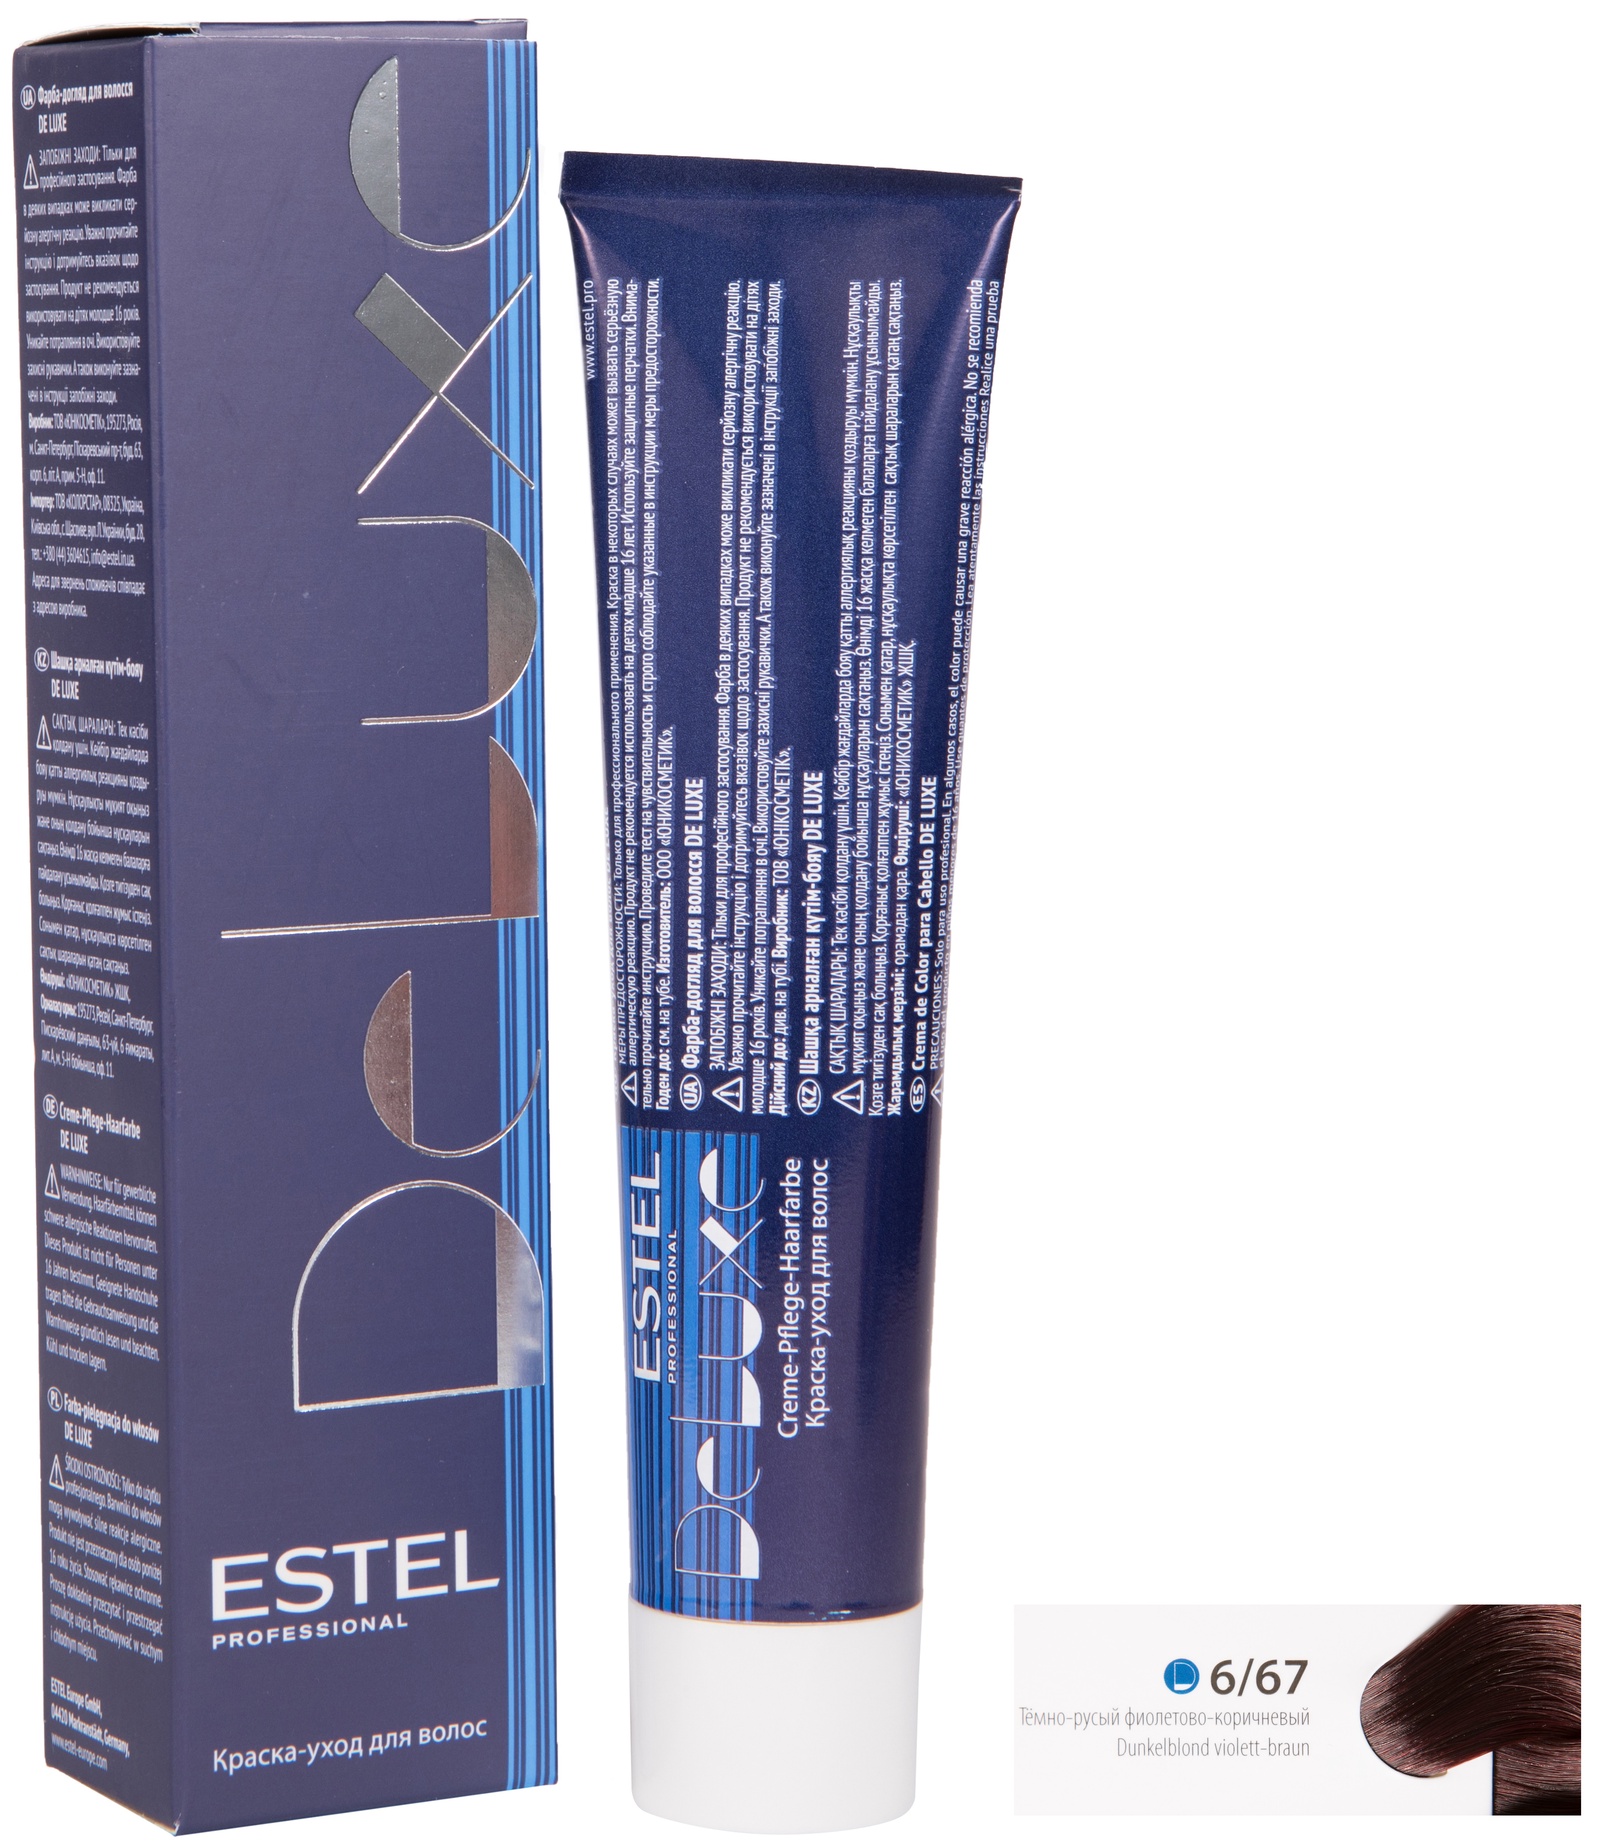 Краска для волос ESTEL PROFESSIONAL 6/67 DE LUXE краска-уход для окрашивания волос, темно-русый фиолетово-коричневый 60 мл